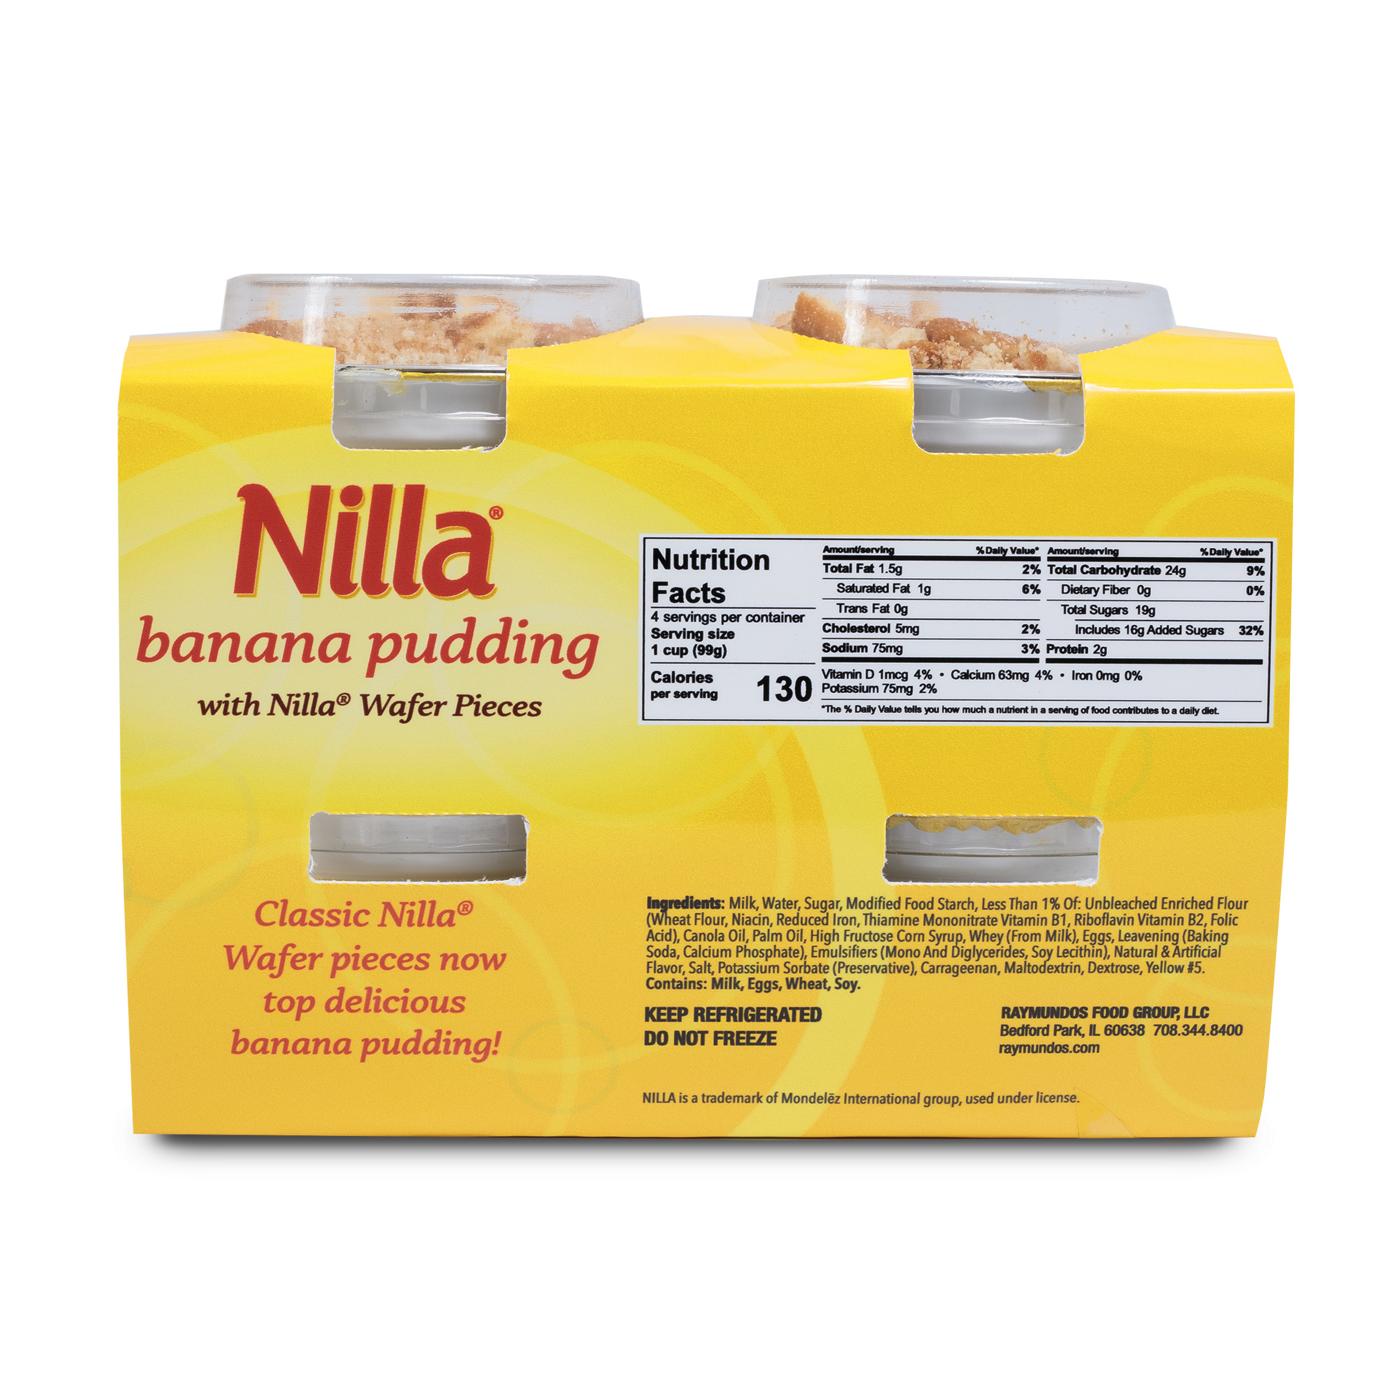 Nilla Banana Pudding With Nilla Wafer Pieces; image 2 of 2